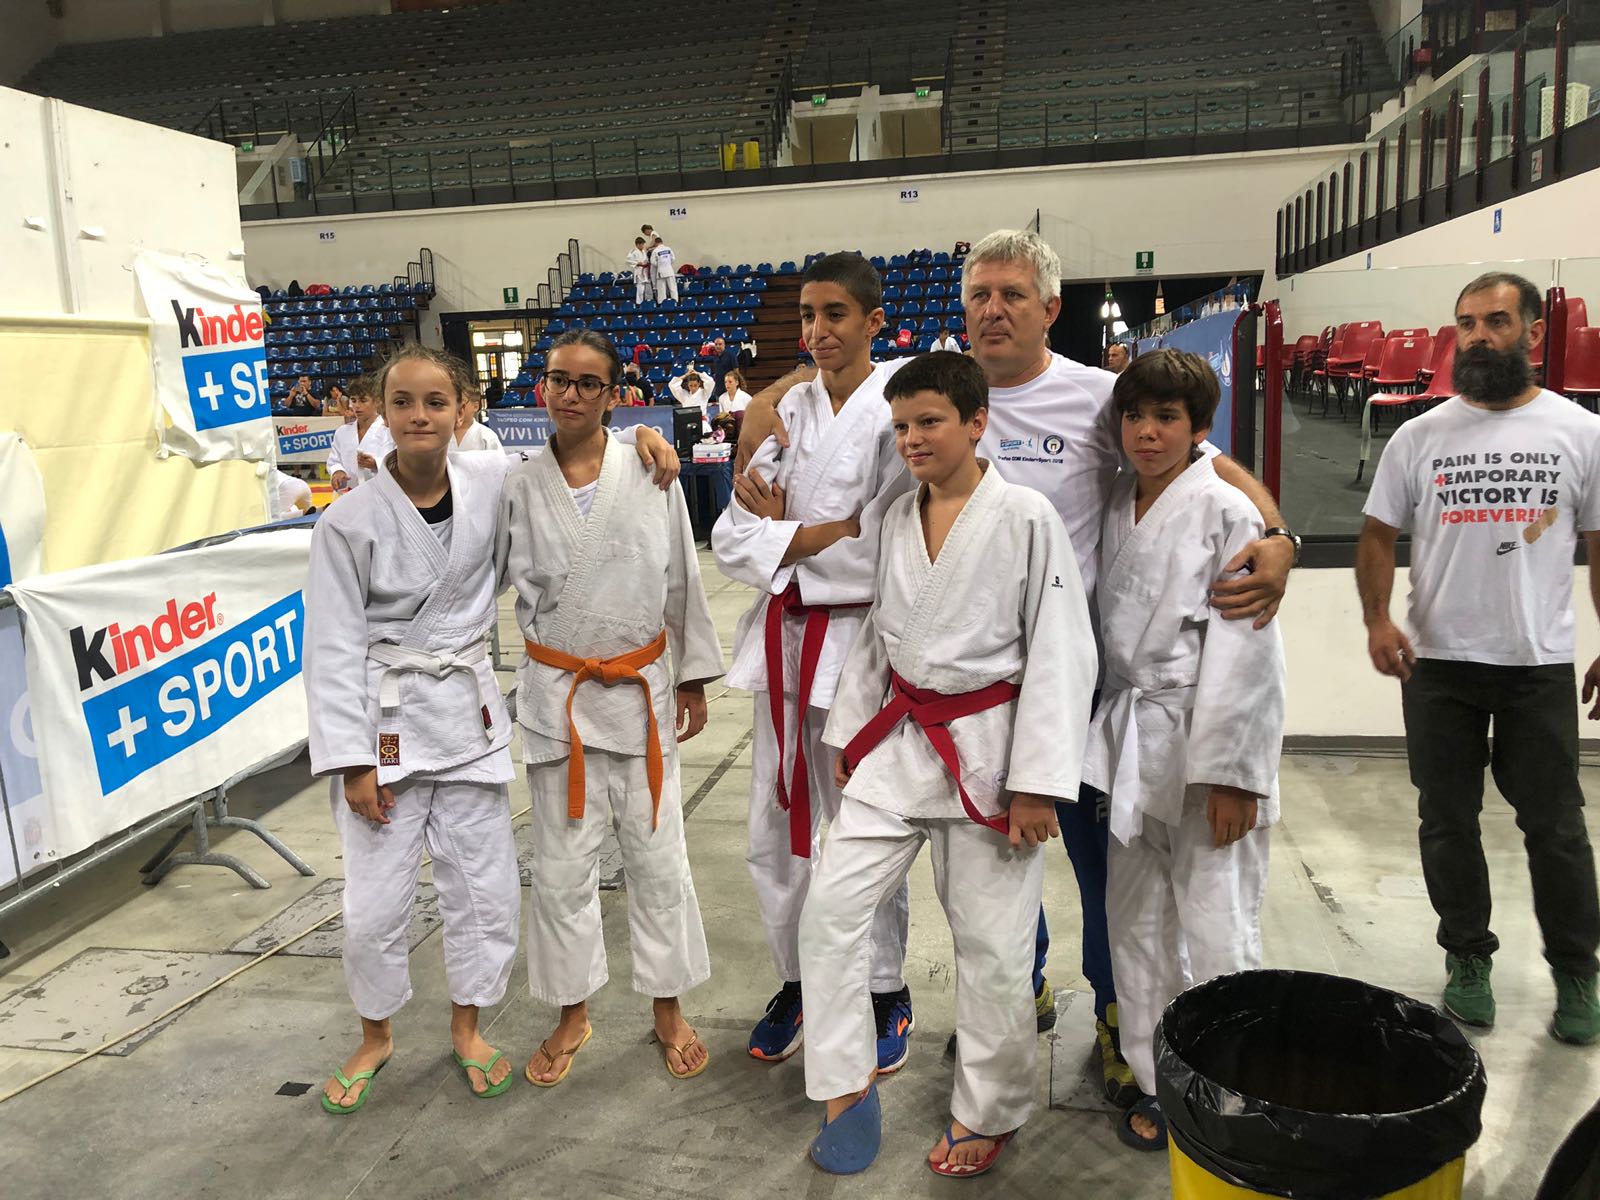 Squadra Emilia Romagna di karate